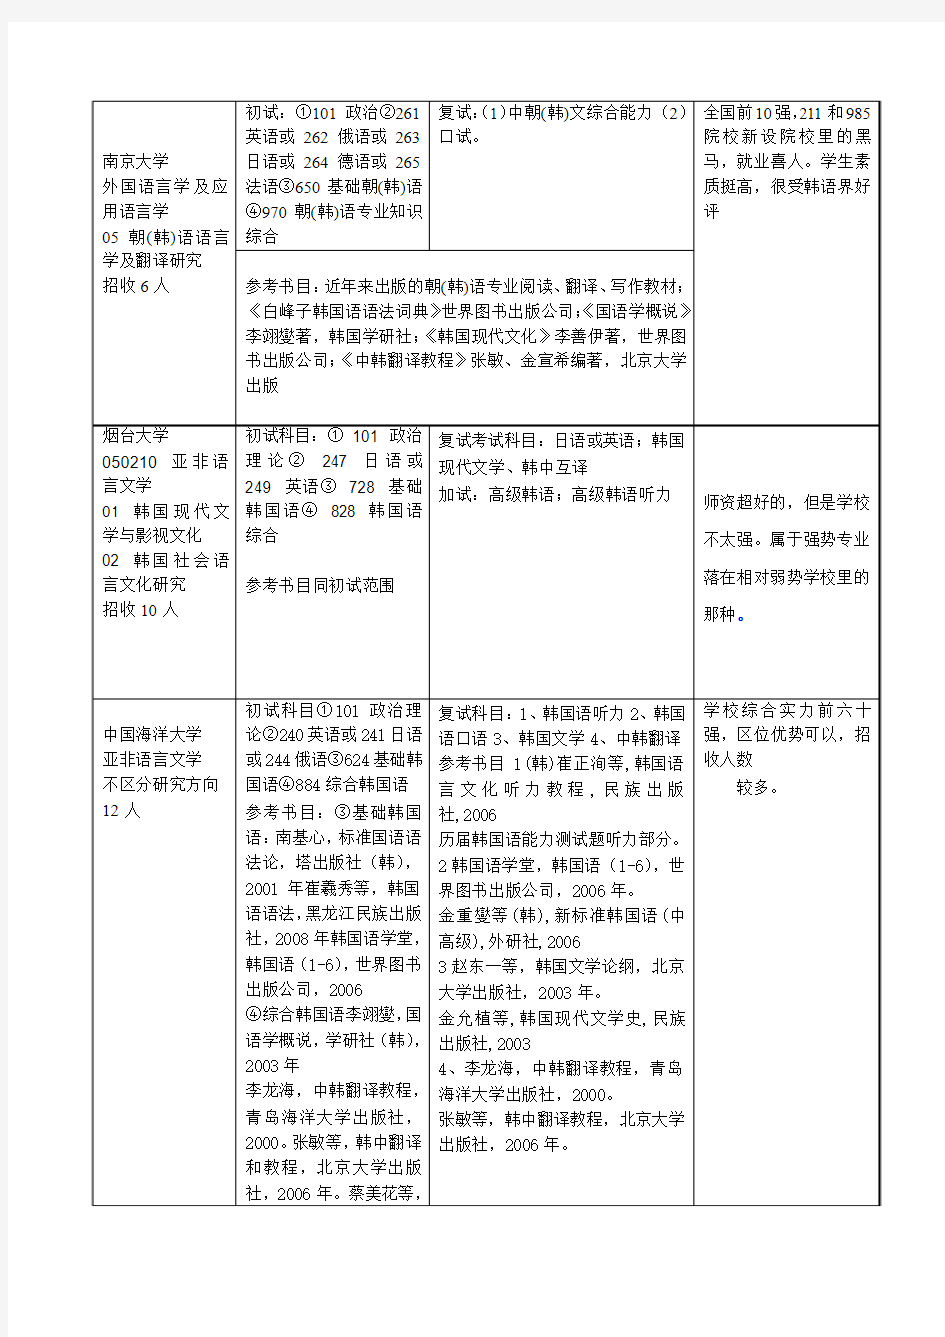 全国院校招收亚非语言文学(韩国语)专业招生考试相关信息一览表